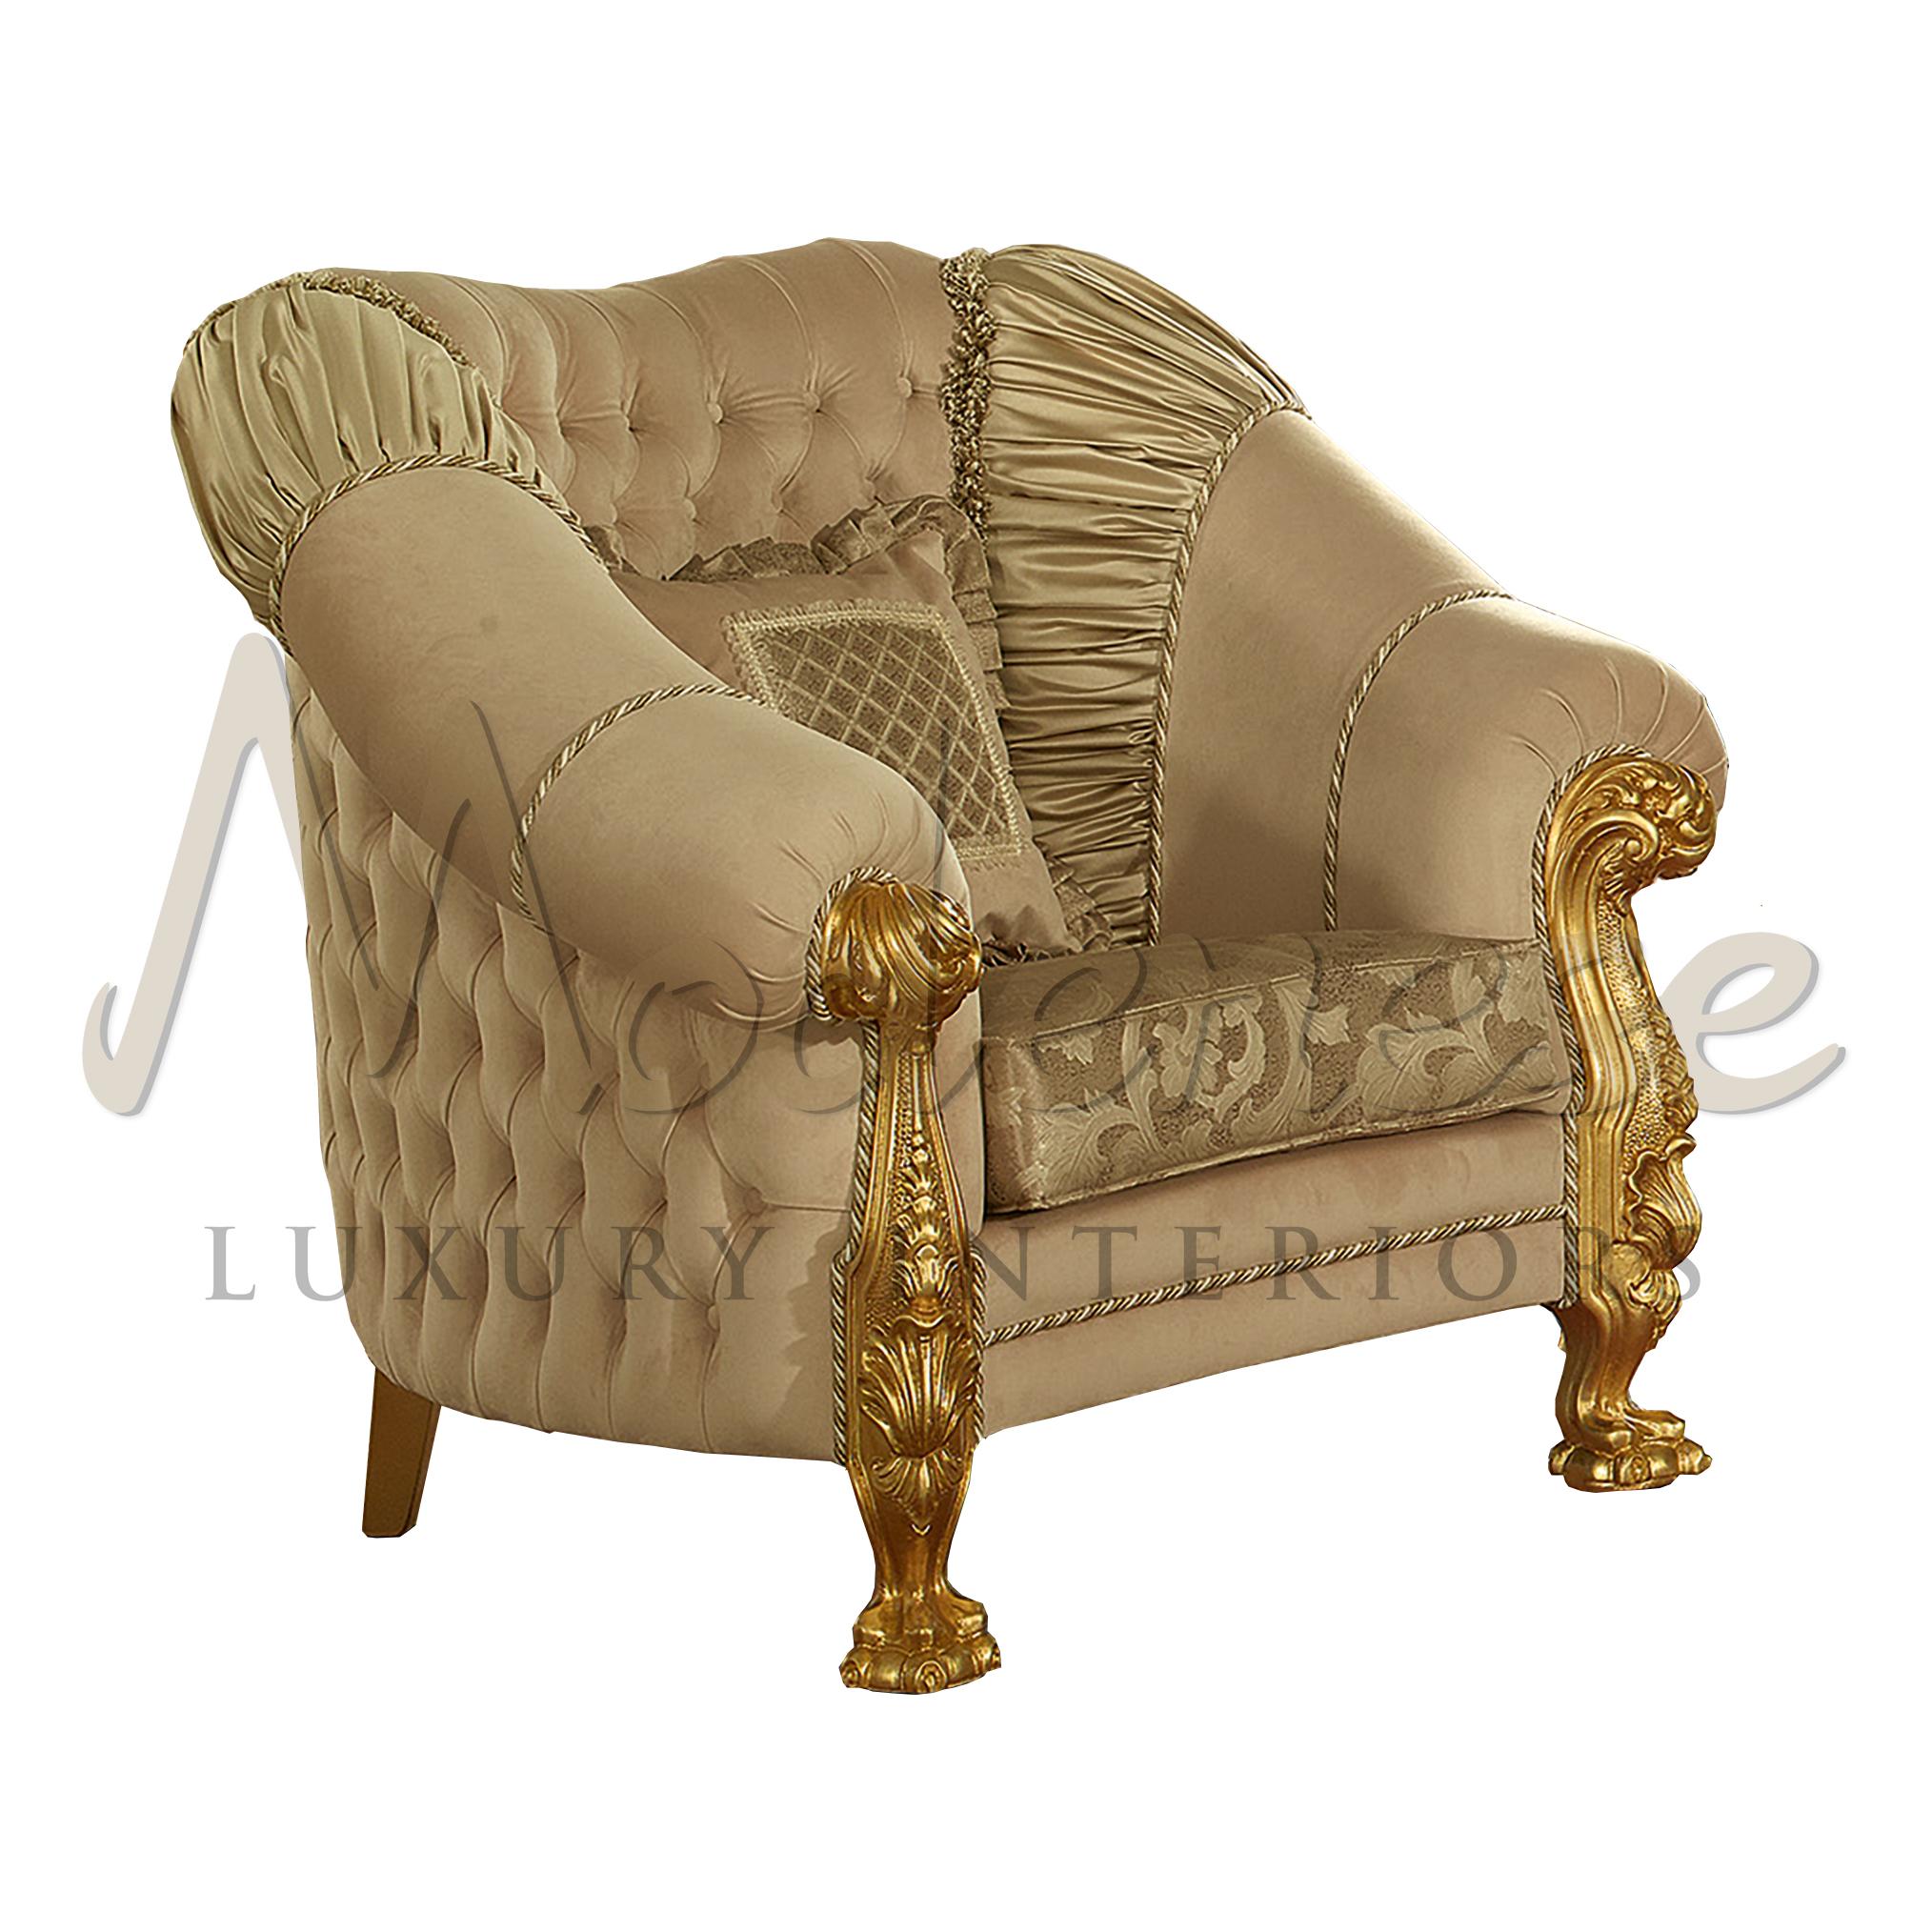 Luxuriöser Capitonne-Sessel mit einzigartigem, geschnitztem Löwenfuß-Design. Die Sitze sind in einem Mix aus Stoff und Leder gehalten. Die Capitonne-Polsterung hat eine elegante Form und ist dennoch sehr bequem, da sie sowohl den äußeren als auch